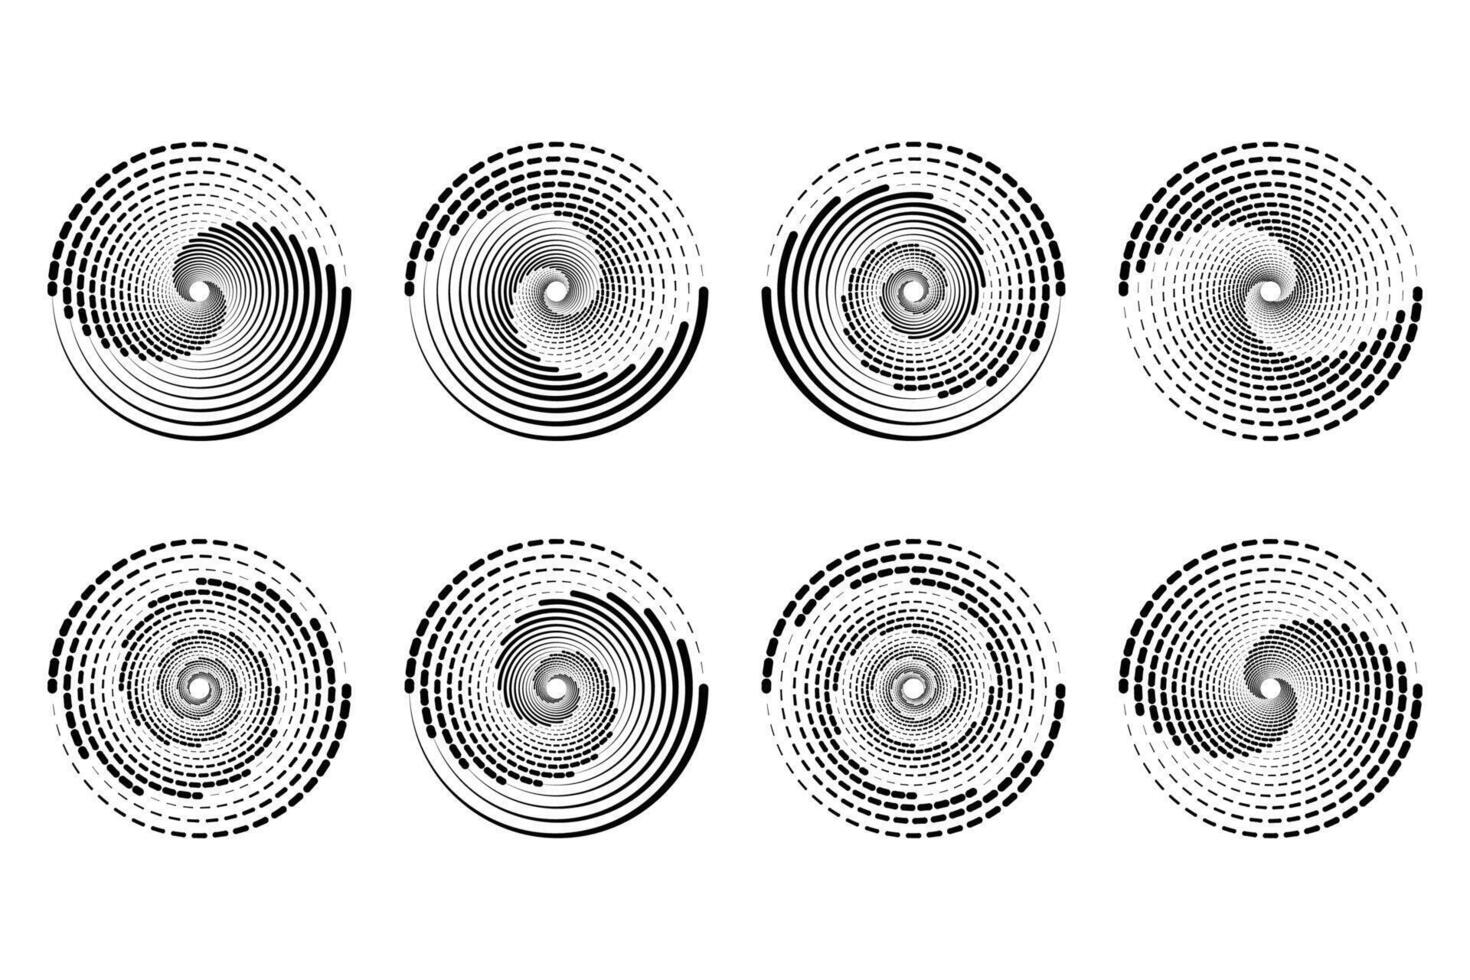 koncentrisk slumpmässig cirklar med dynamisk rader. virvel cirkulär virvla runt. vektor